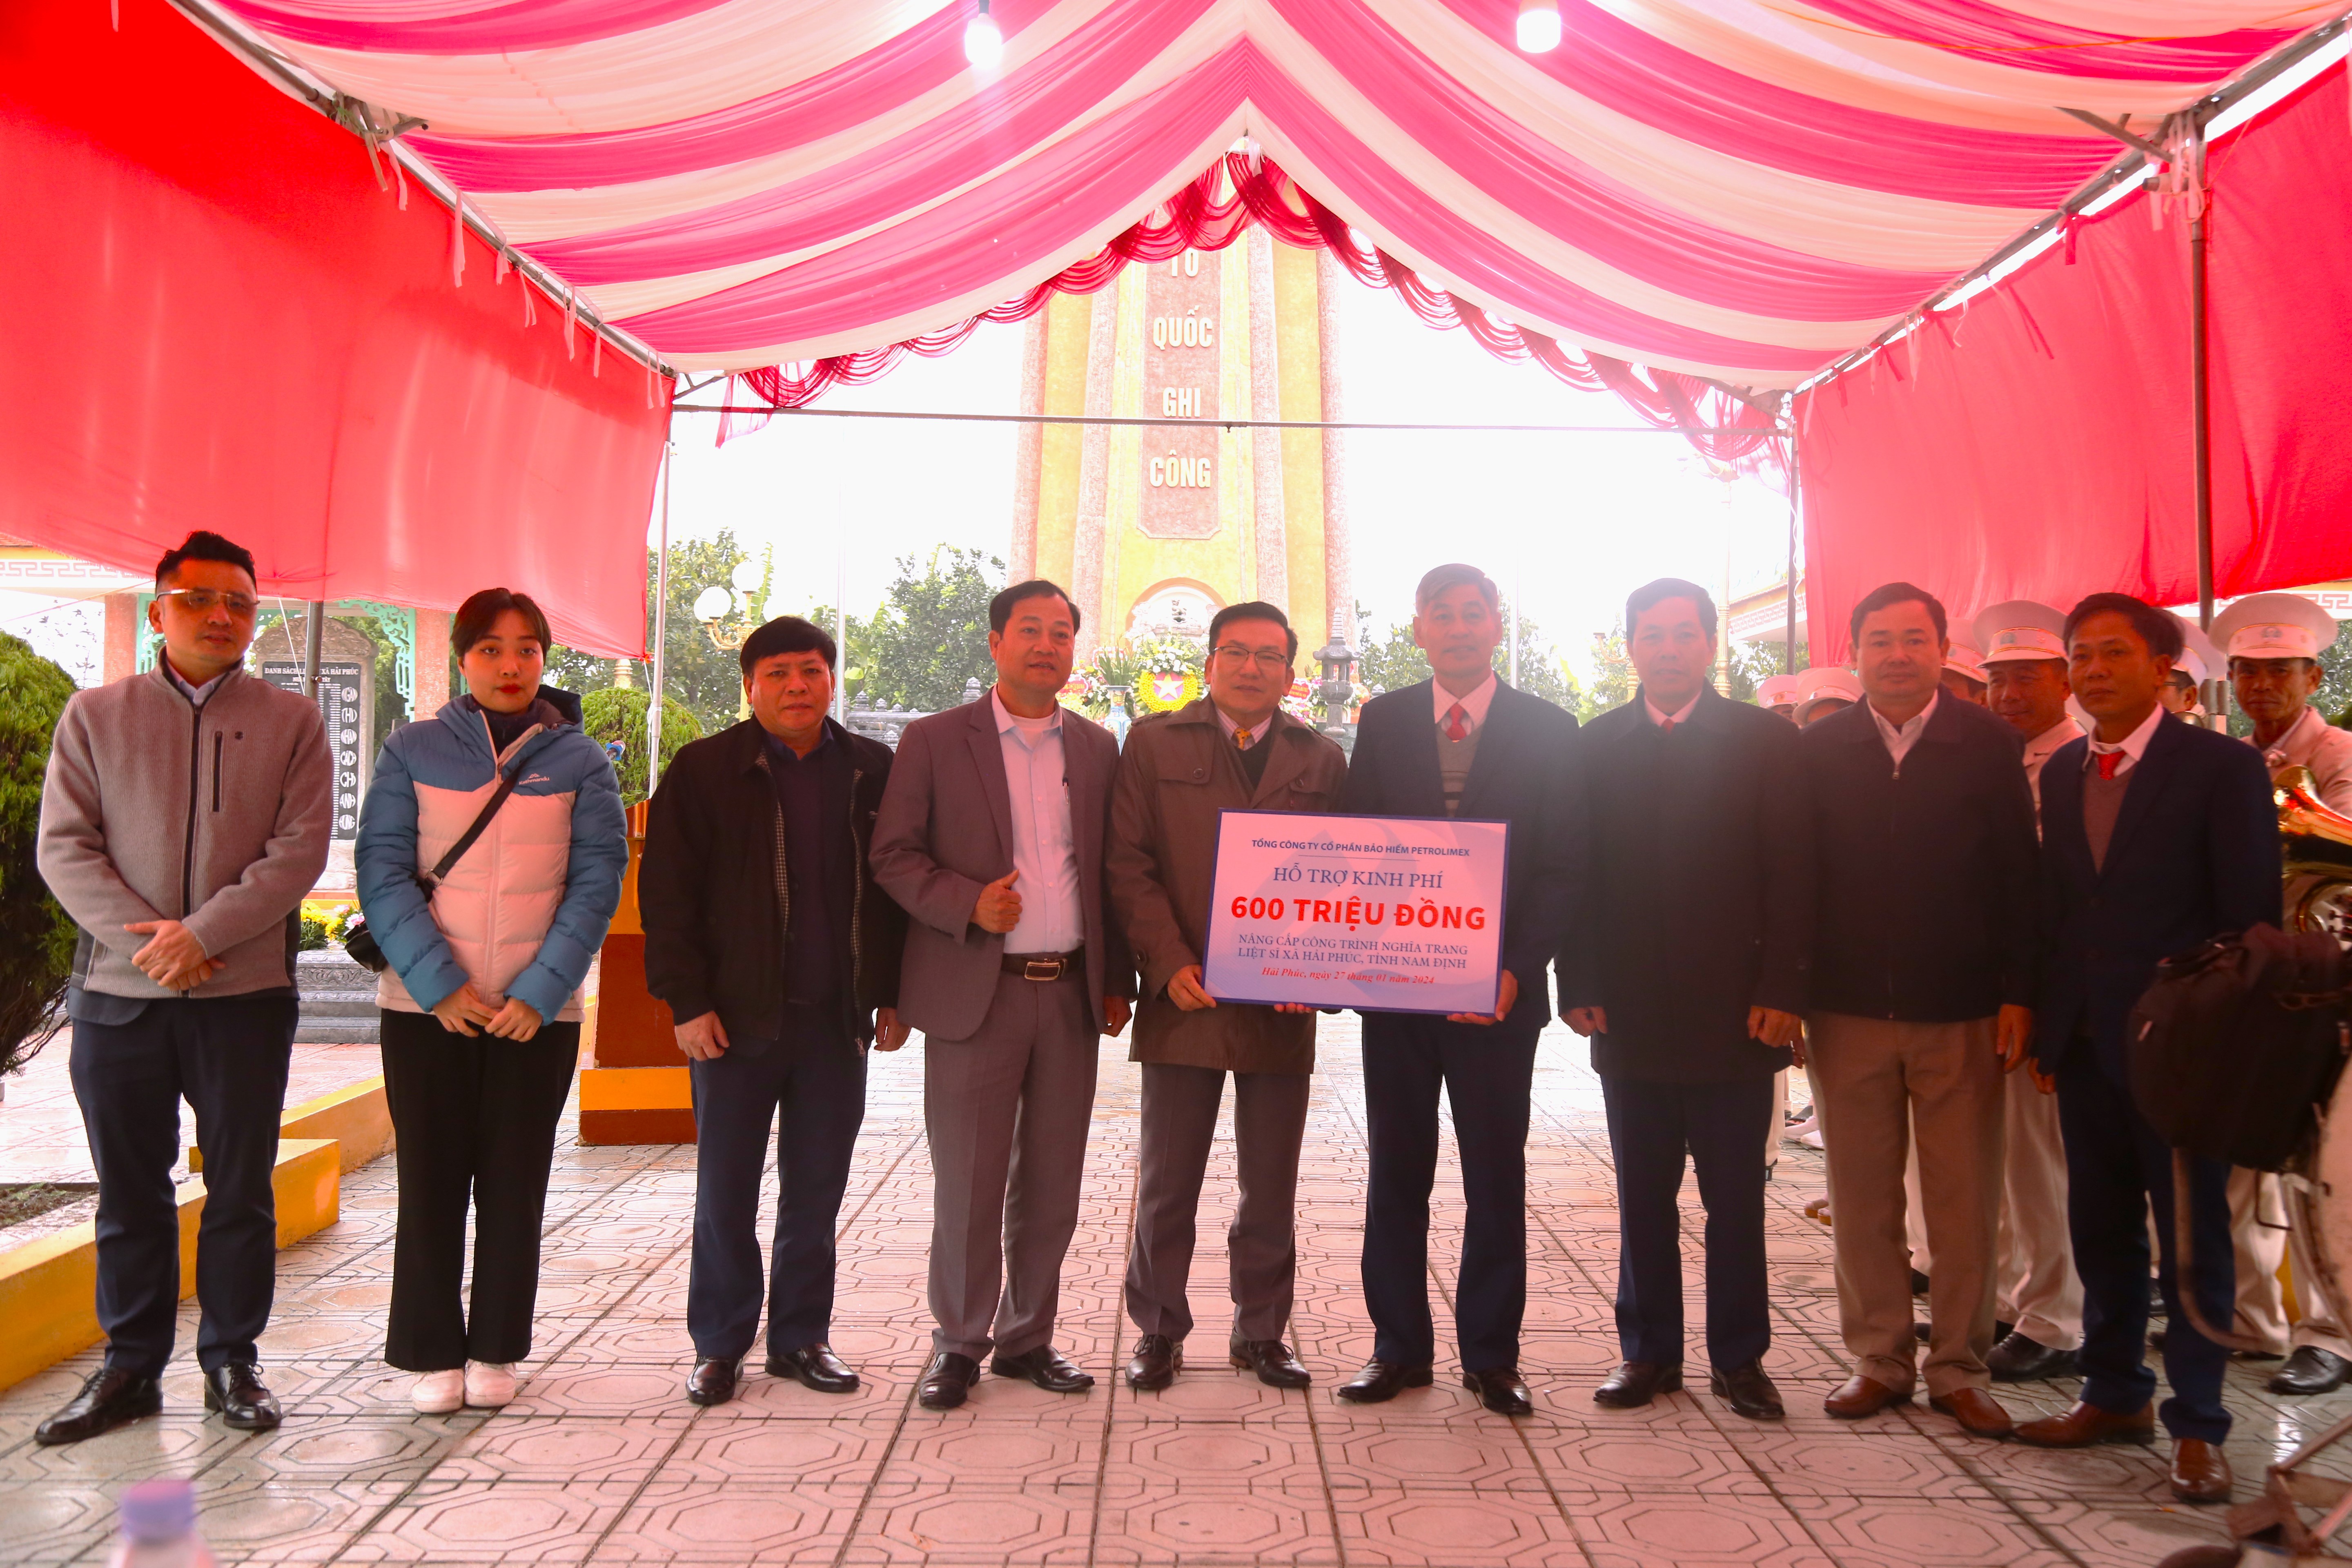 Bảo hiểm PJICO tham dự lễ dâng hương hoàn thành nâng cấp công trình nghĩa trang liệt sỹ xã Hải Phúc, Huyện Hải Hậu, tỉnh Nam Định.